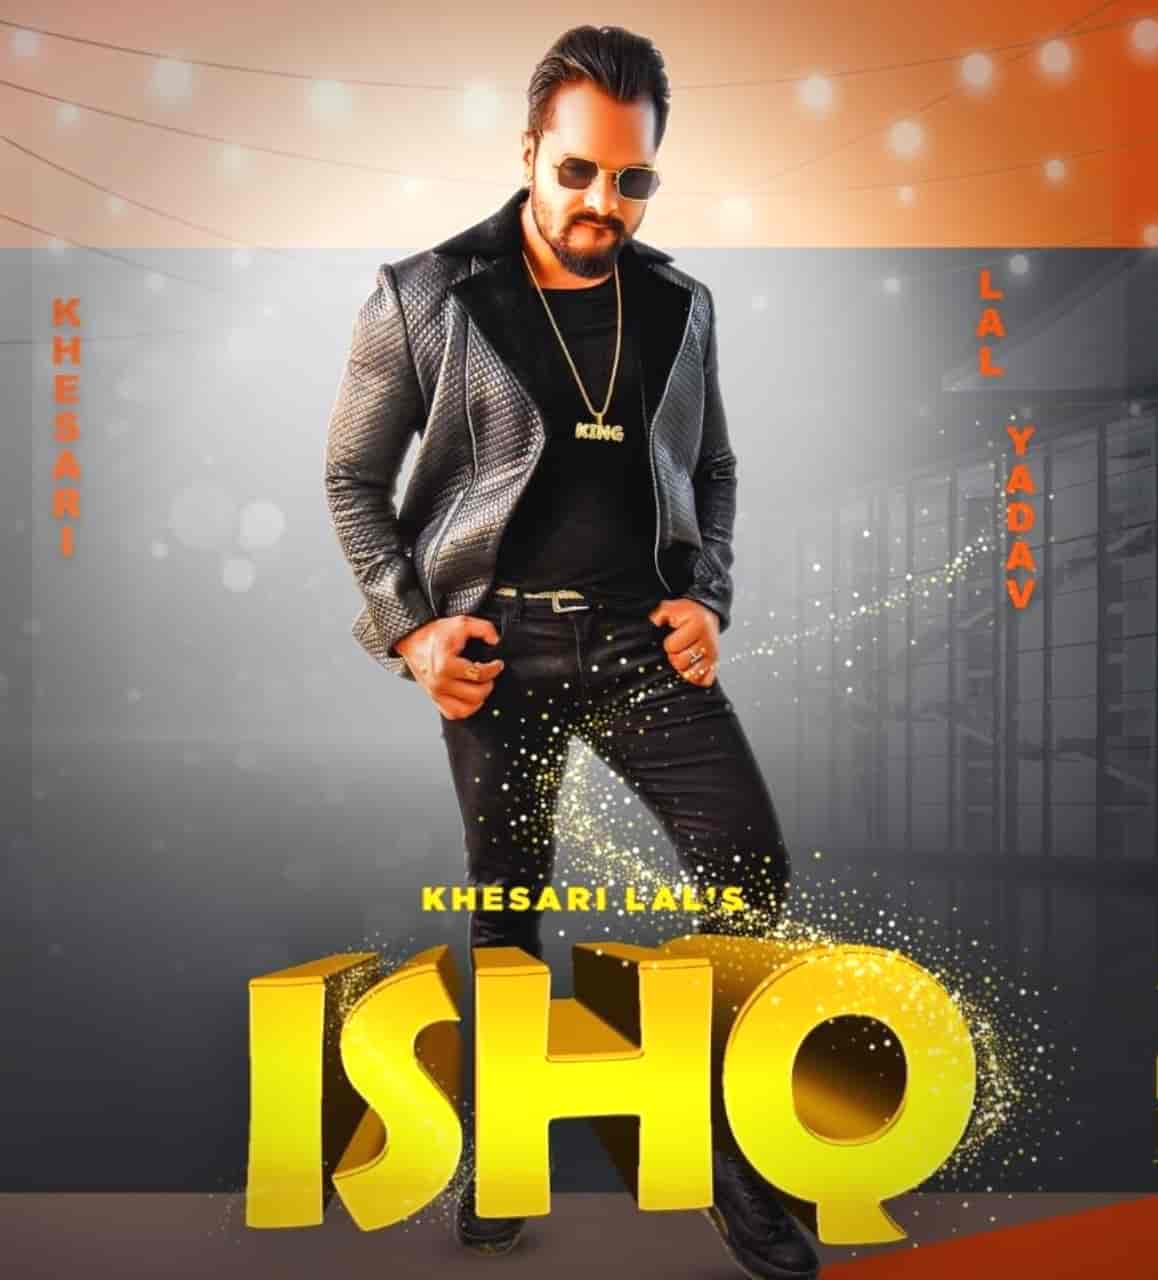 Ishq Hindi Song Image Features Khesari Lal Yadav and Knishka Negi